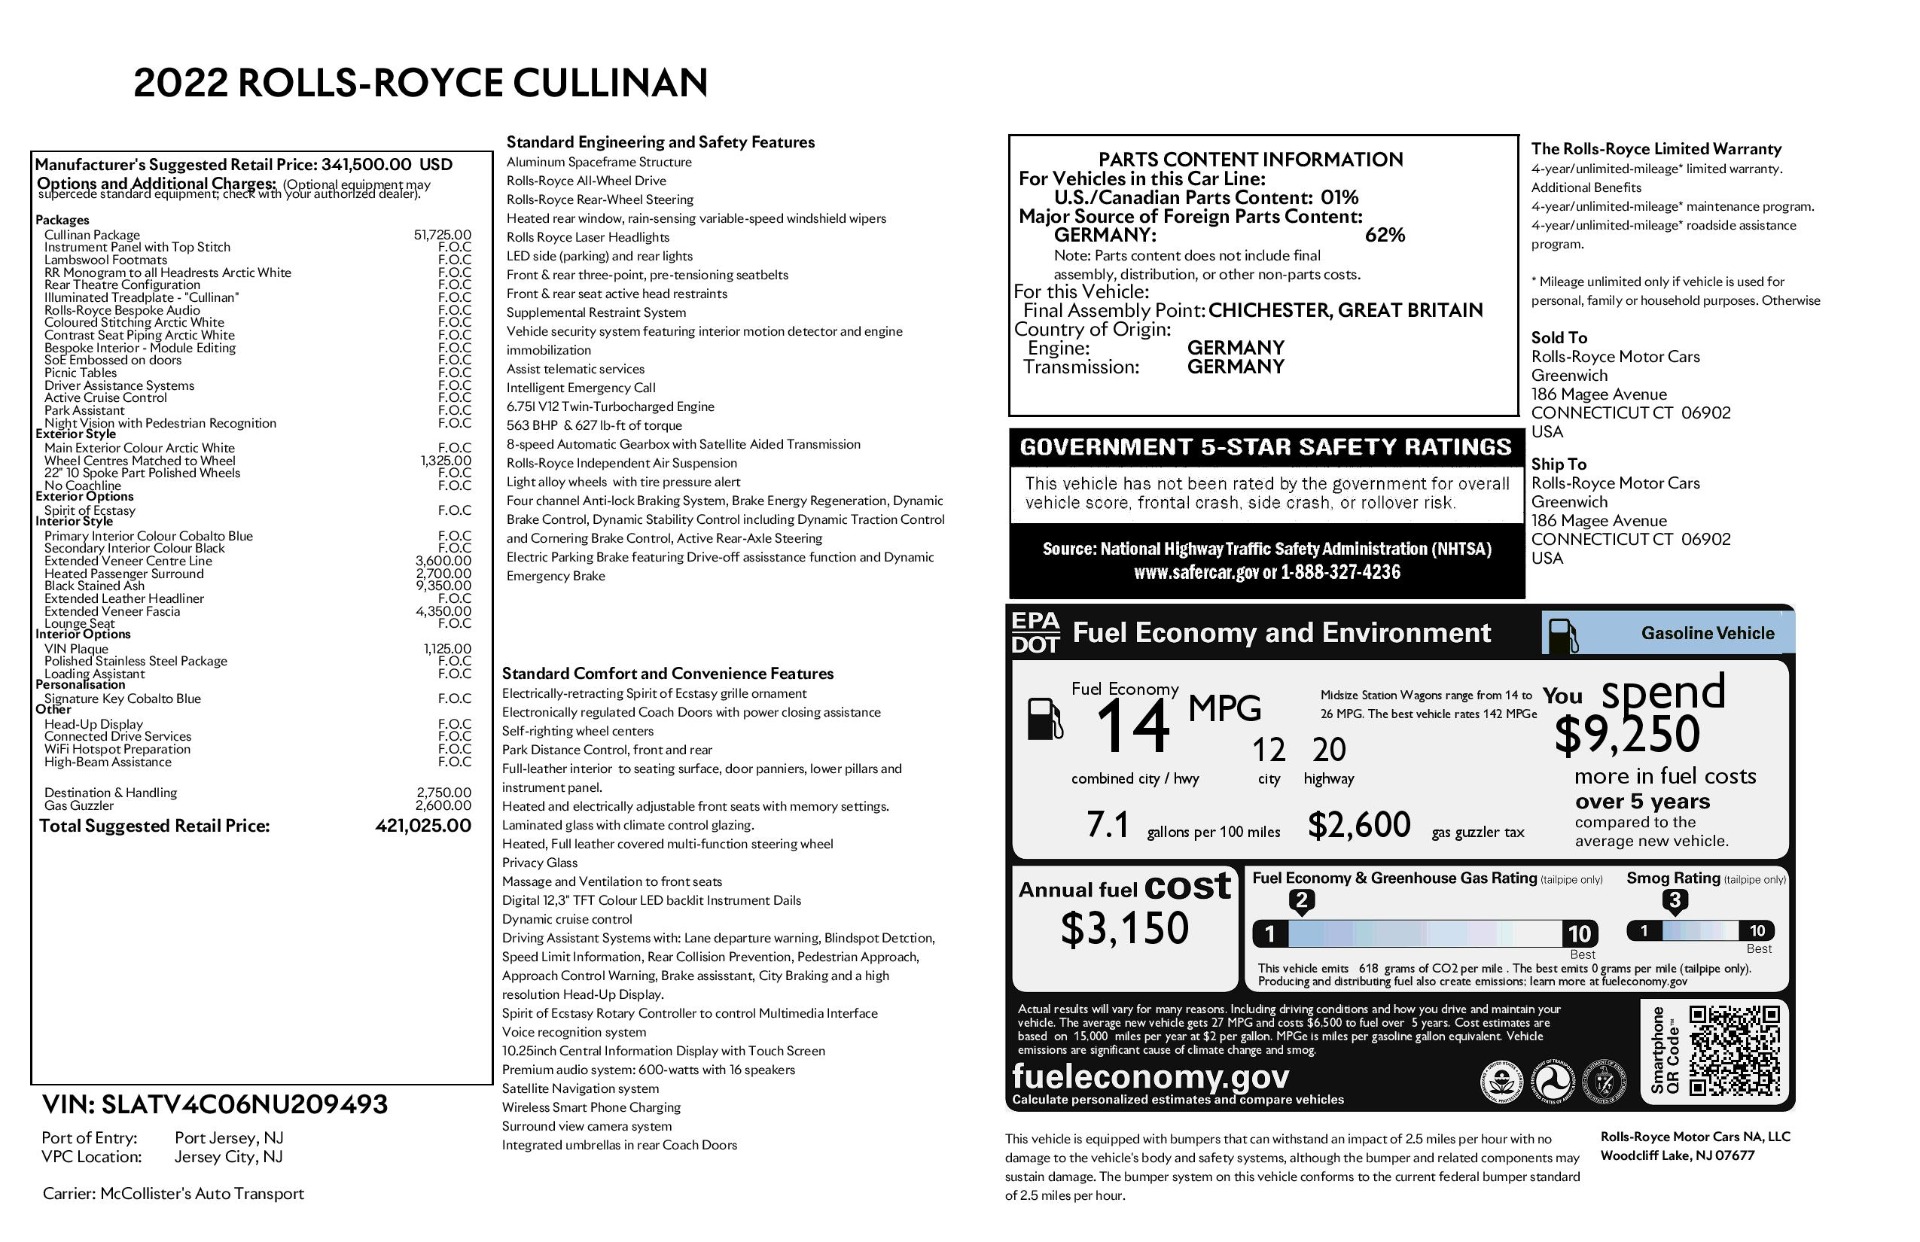 Used 2022 Rolls Royce Cullinan